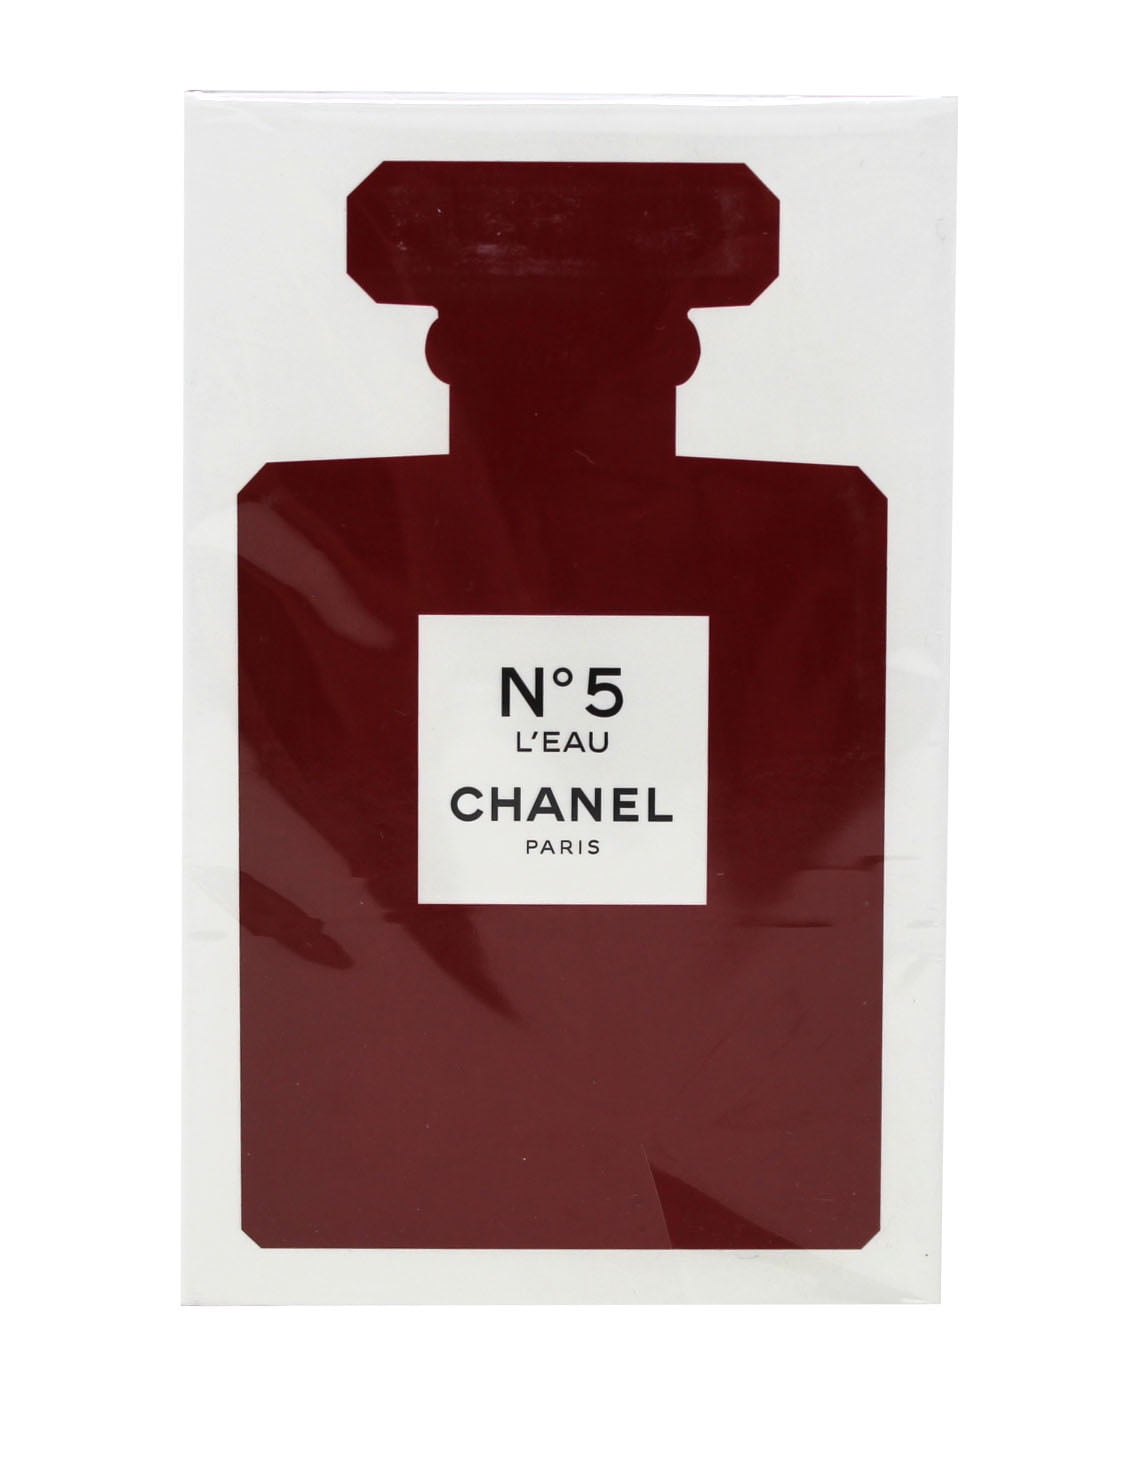 5e arr. Paris, Our Version of Chanel No.5*, Roller-Ball Eau de Parfum –  belcamshop